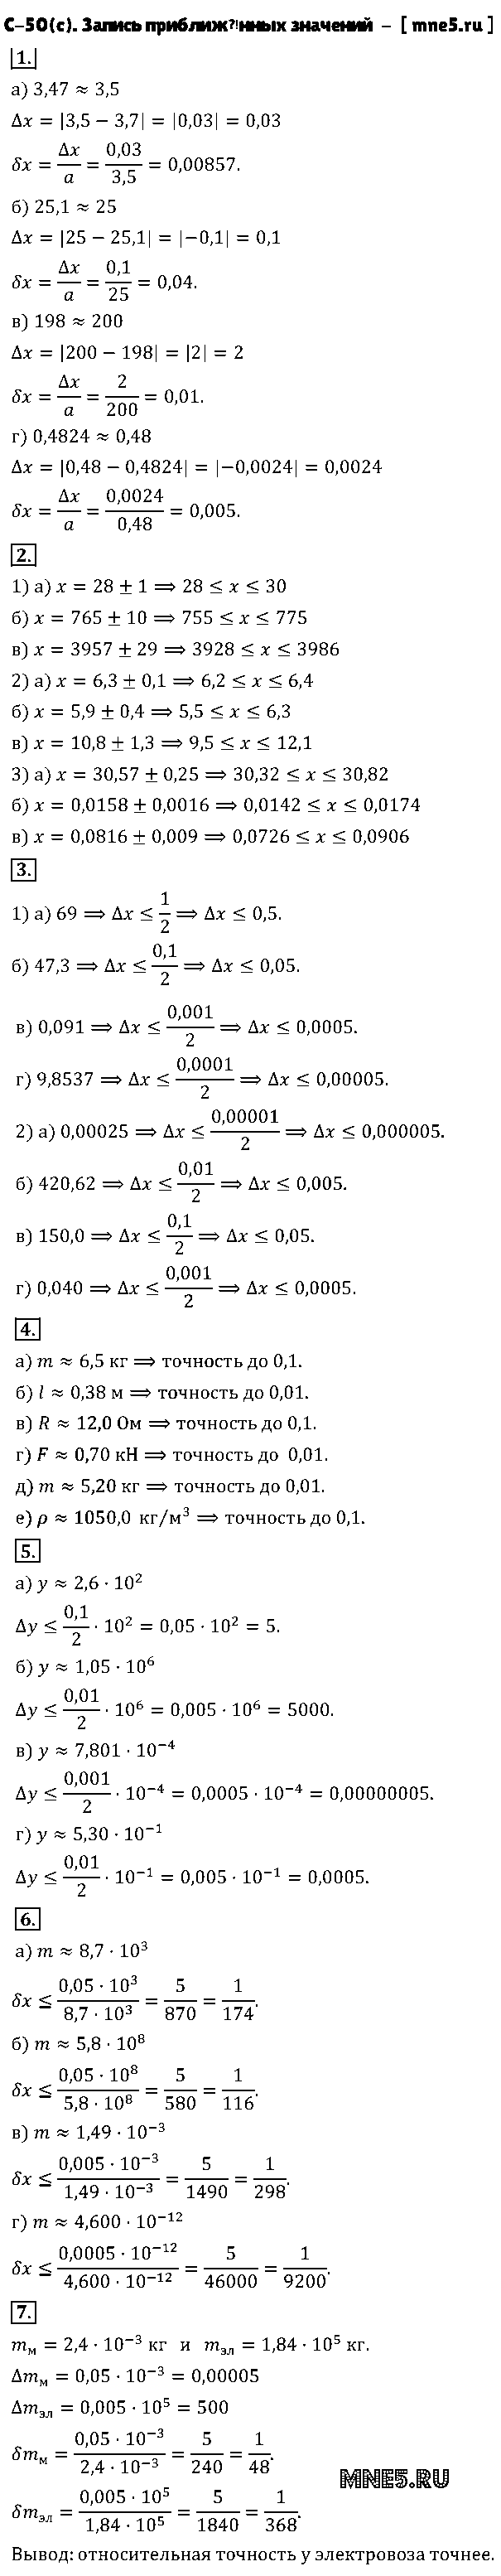 ГДЗ Алгебра 8 класс - С-50(с). Запись приближённых значений